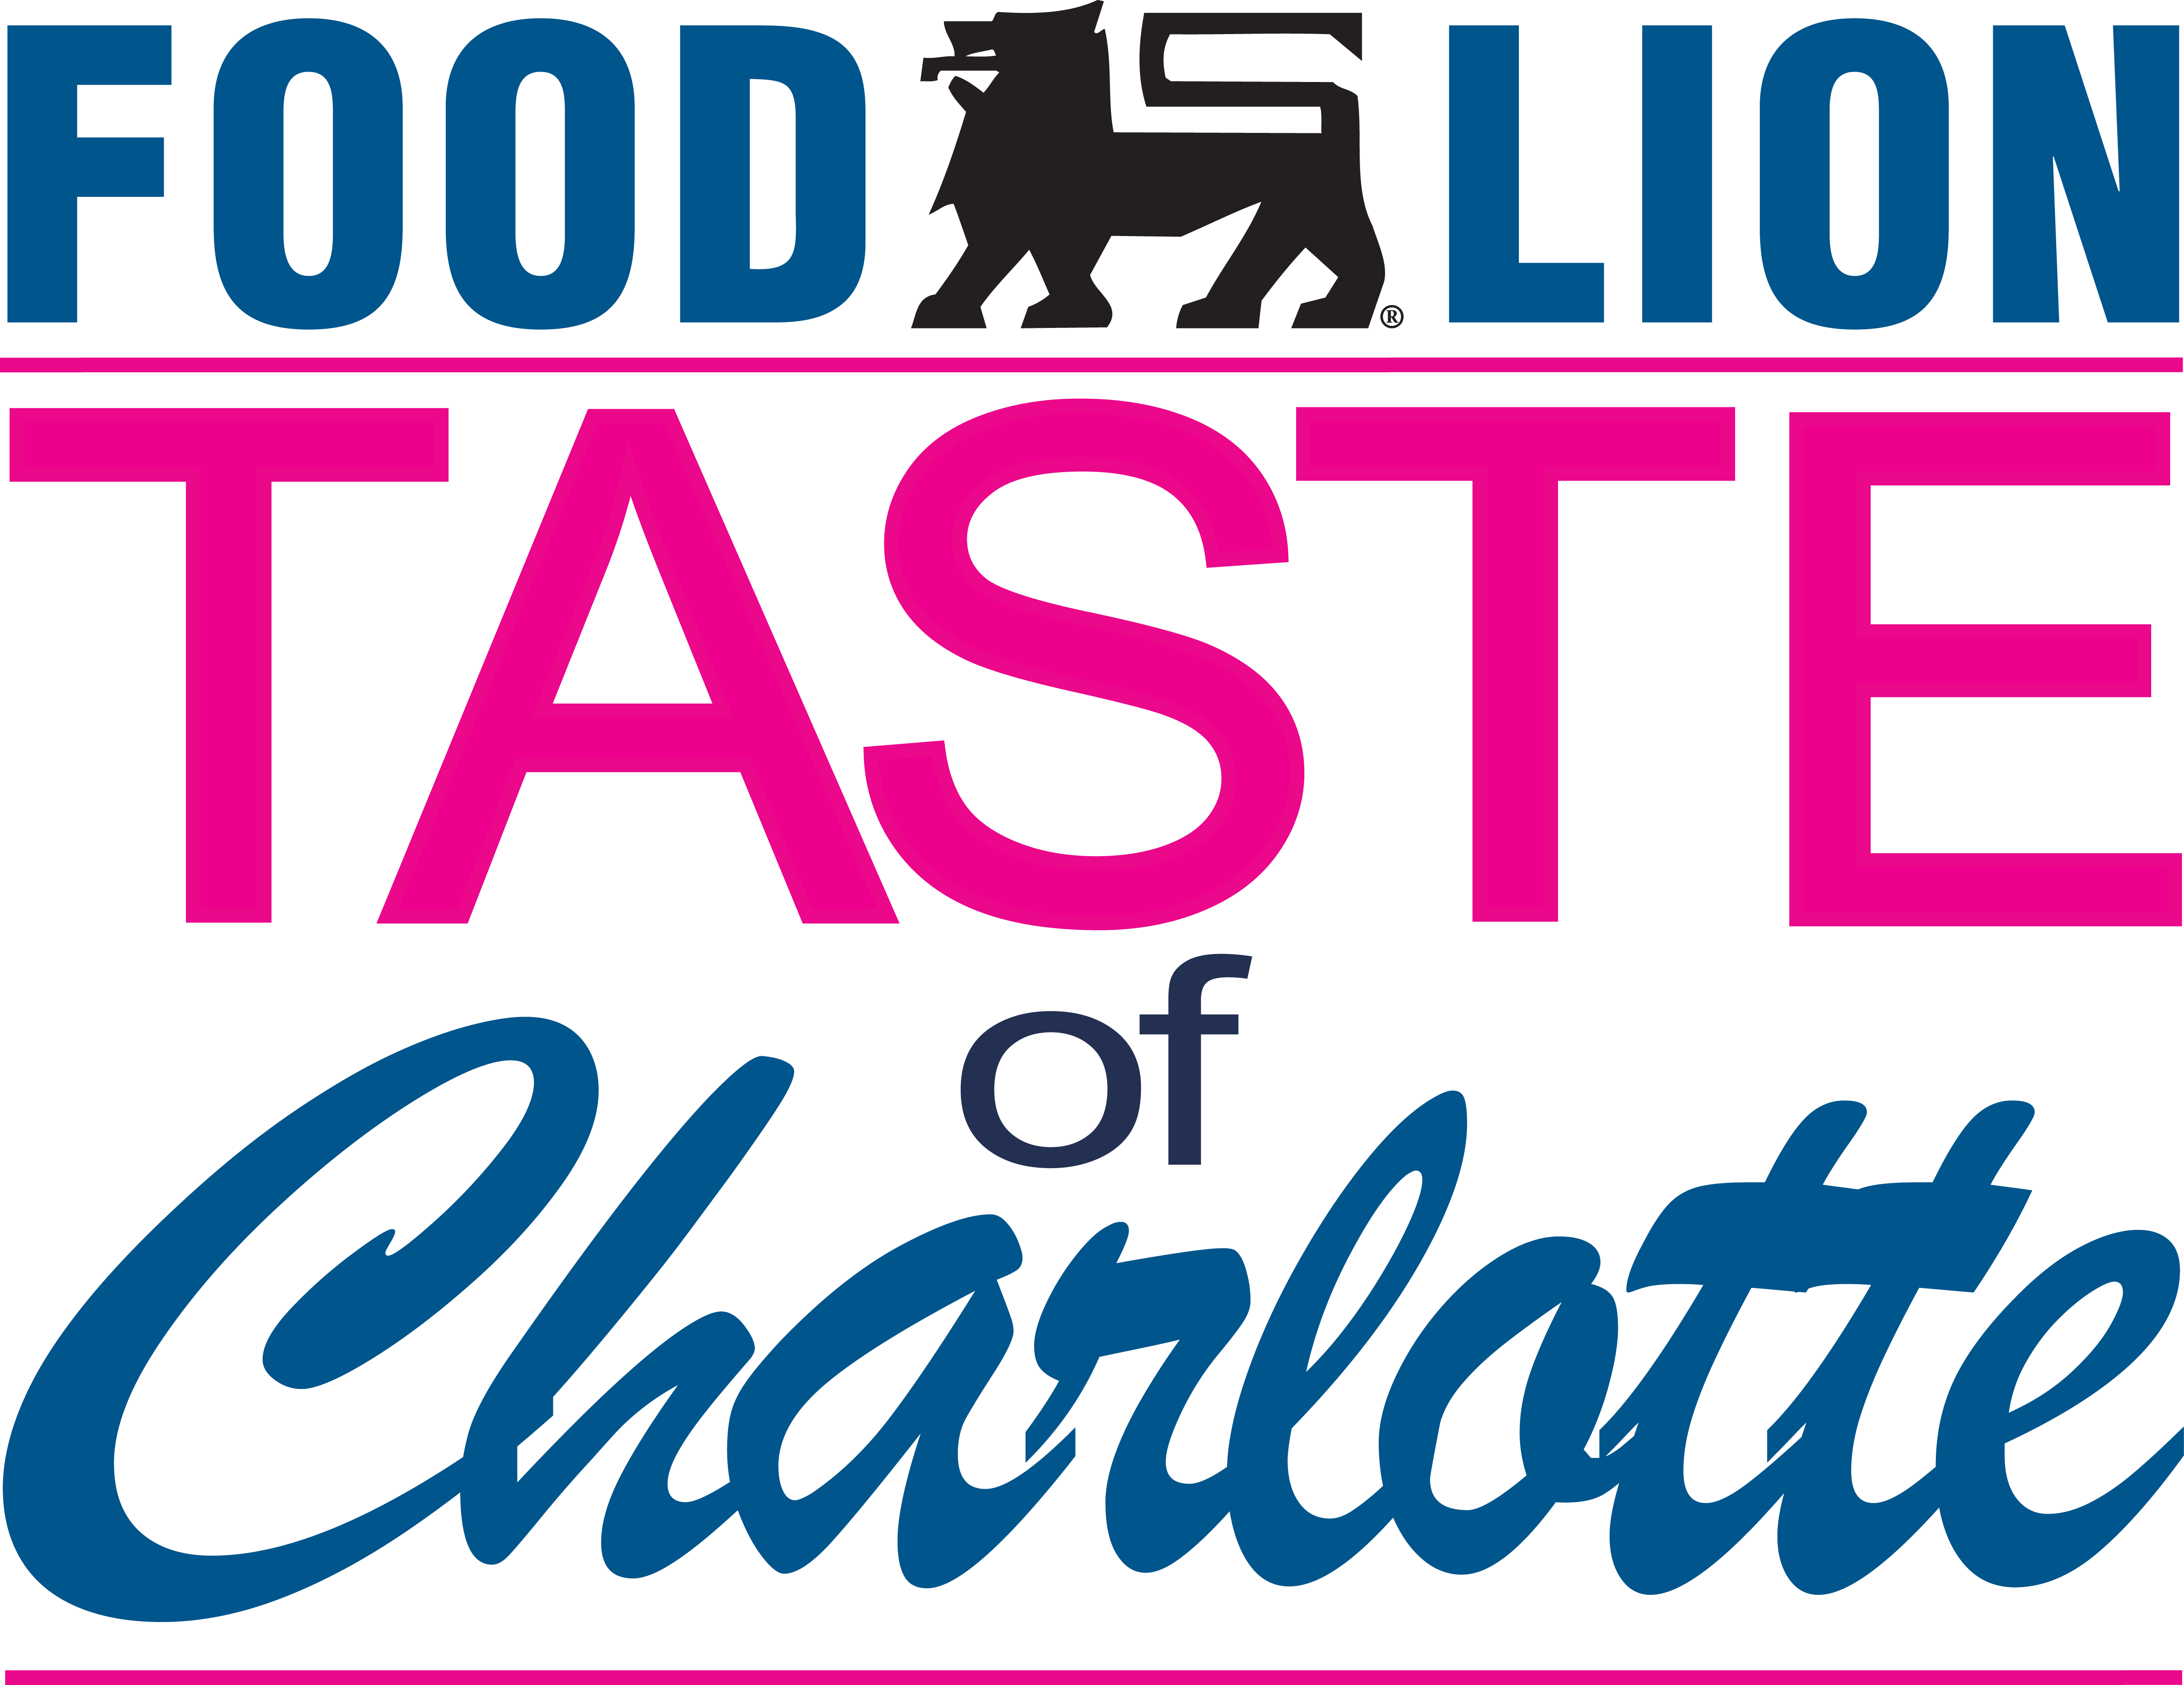 Taste of Charlotte Festival